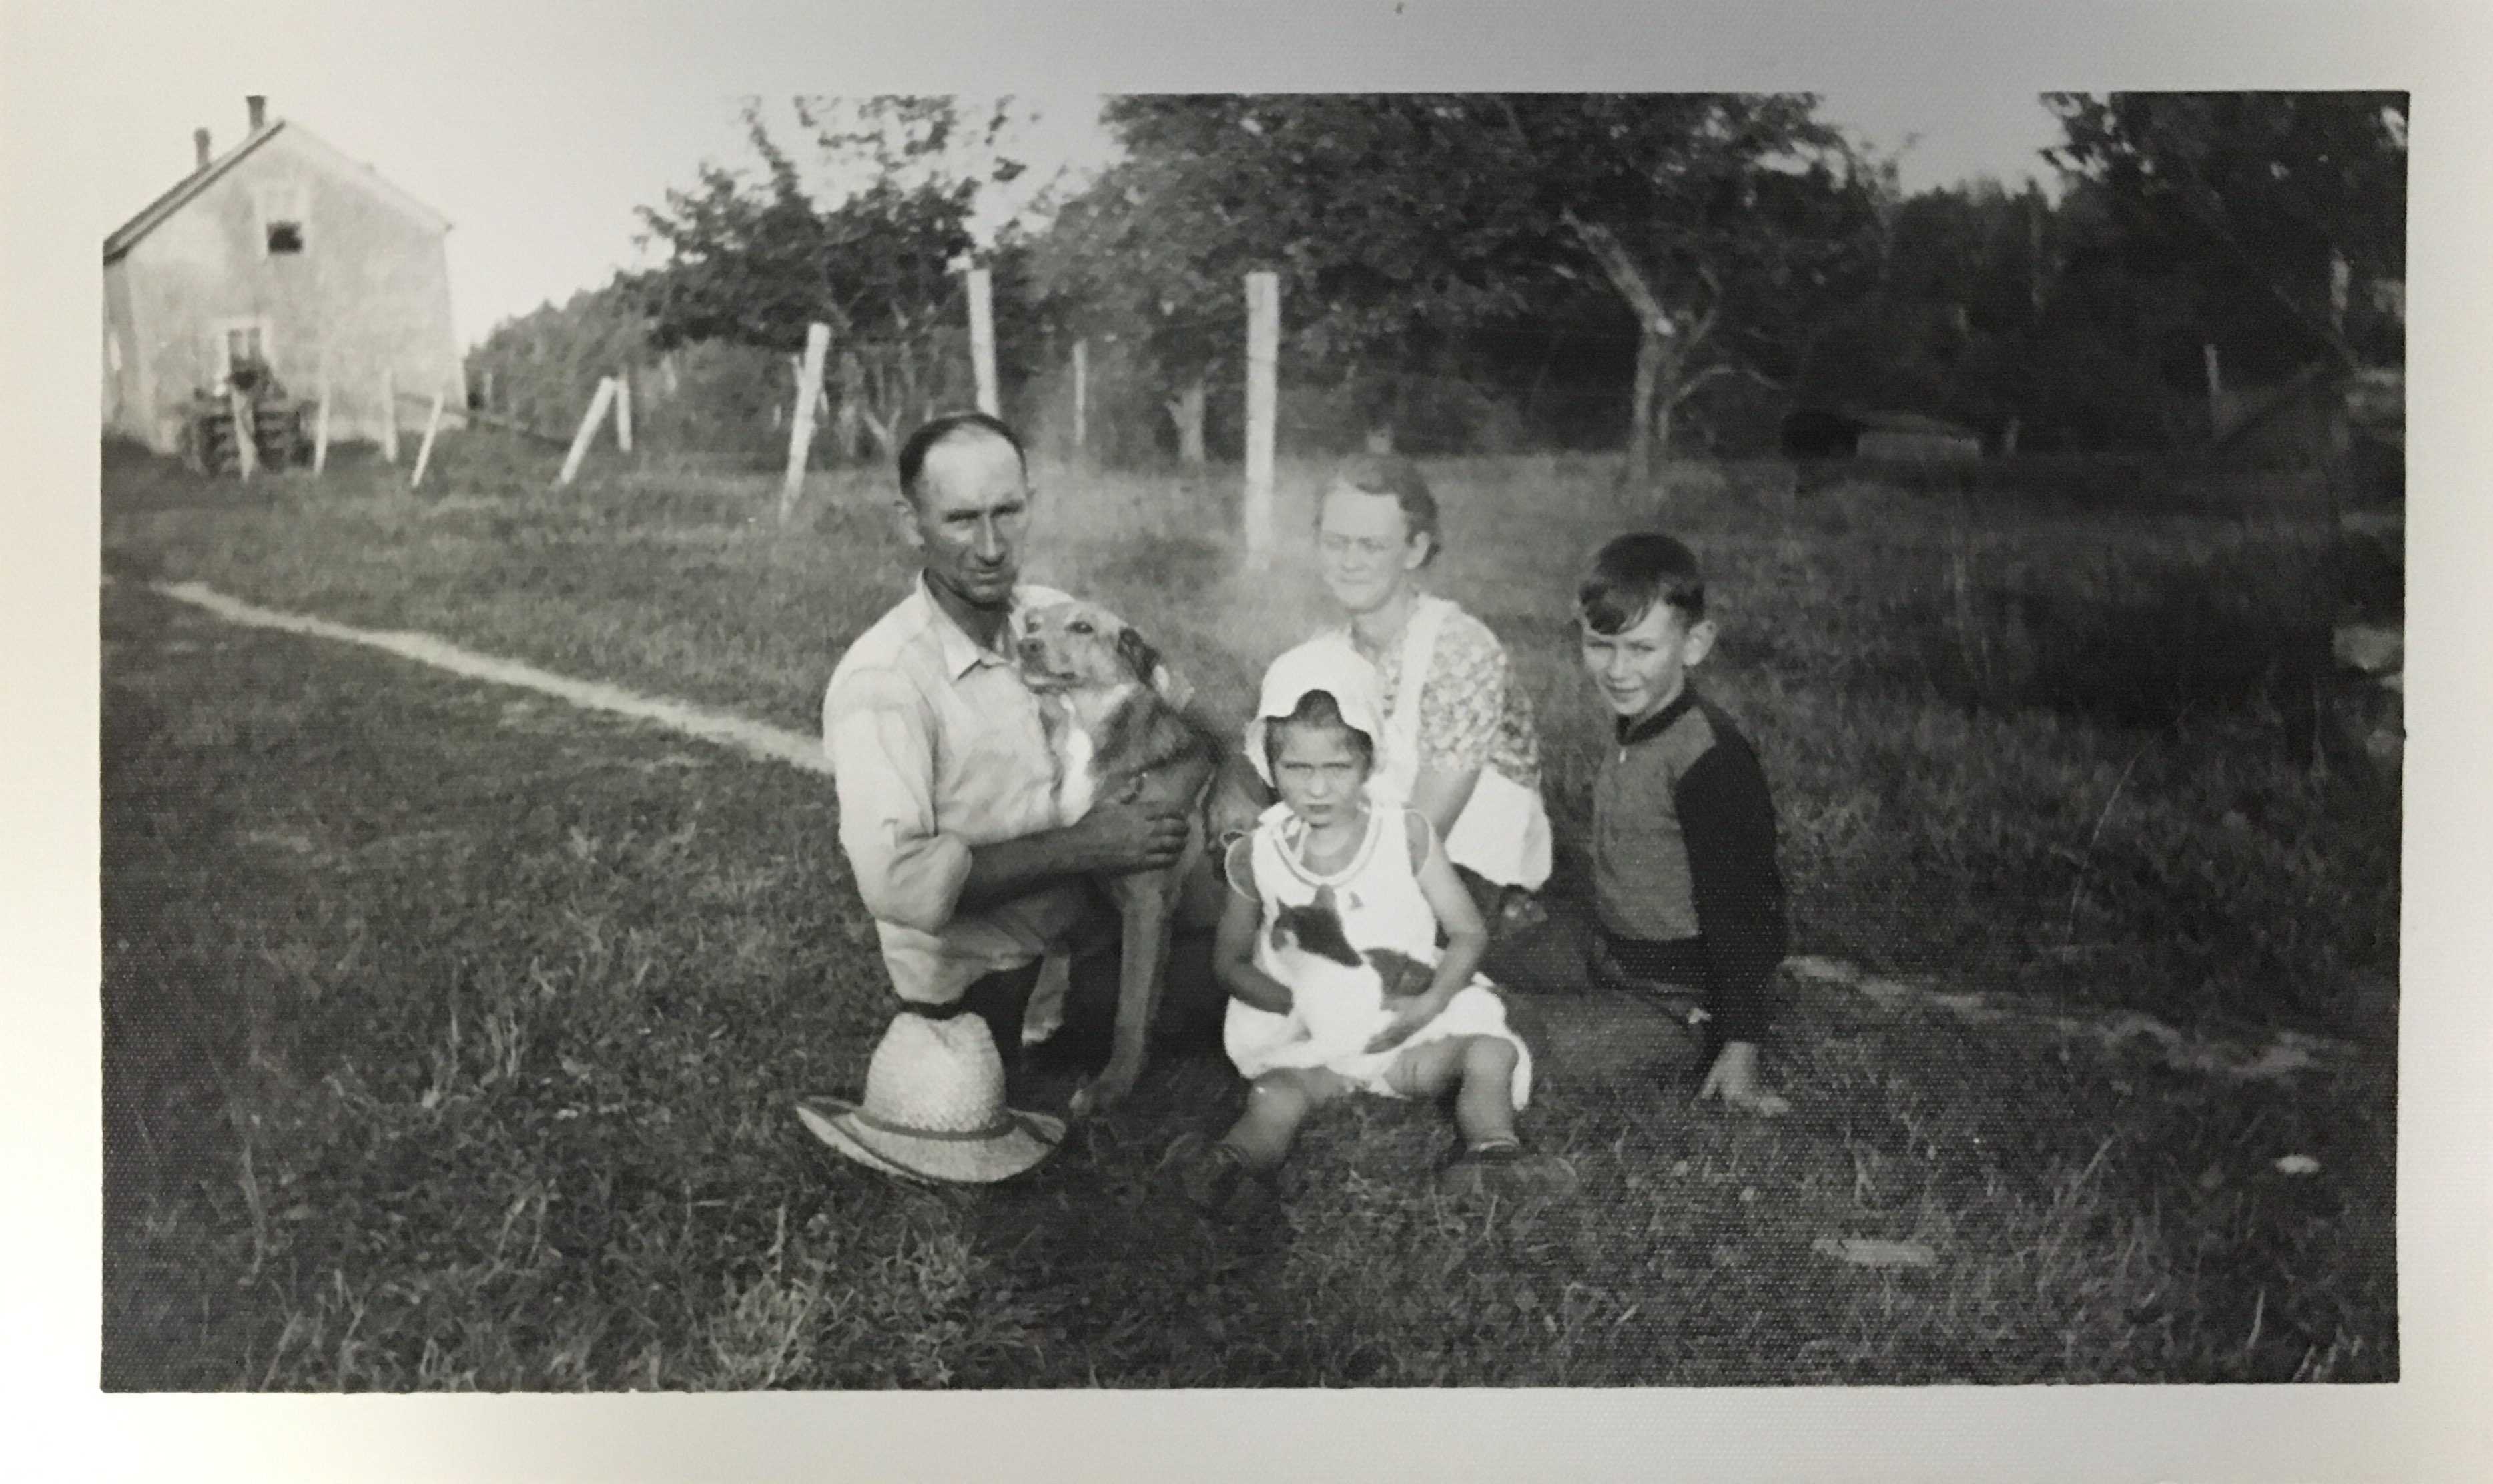 Photographie en noir et blanc – Archie et sa famille, assis sur la pelouse de leur ferme. Archie tient le chien de la famille, Brownie. Sa fille Margie, sa femme Grace et son fils Francis sont à sa gauche.